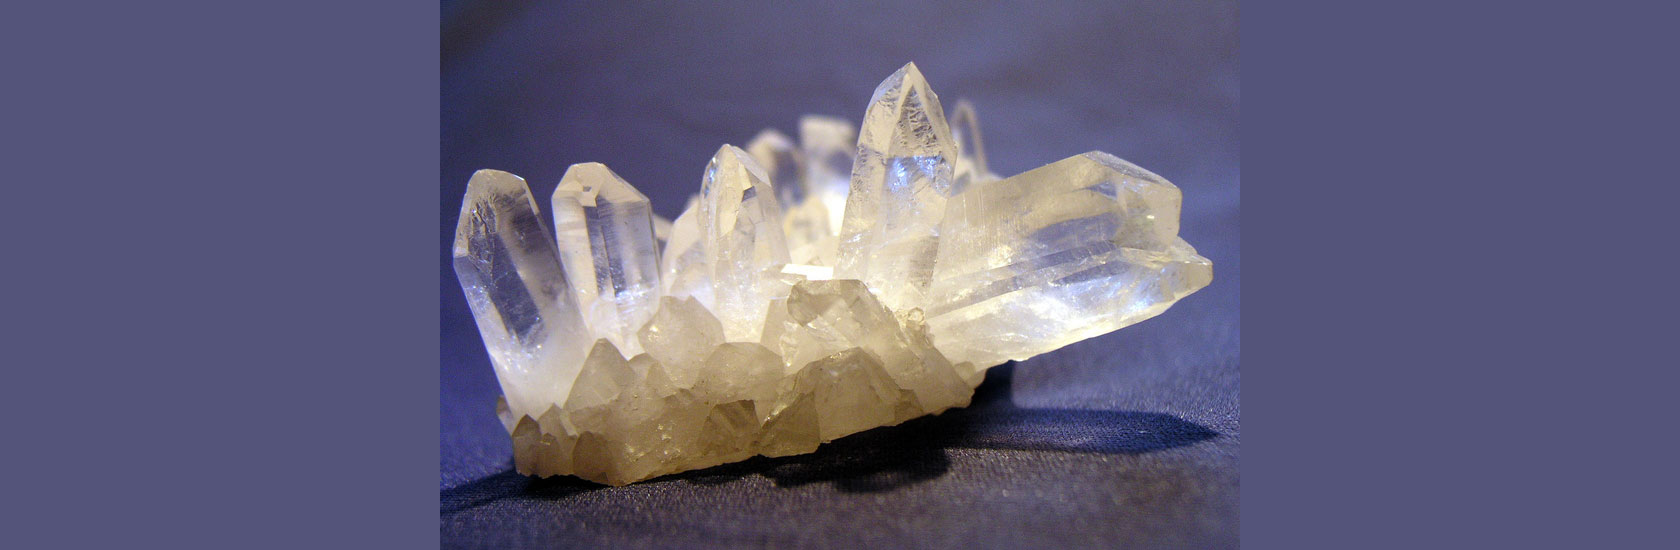 weißer Kristall